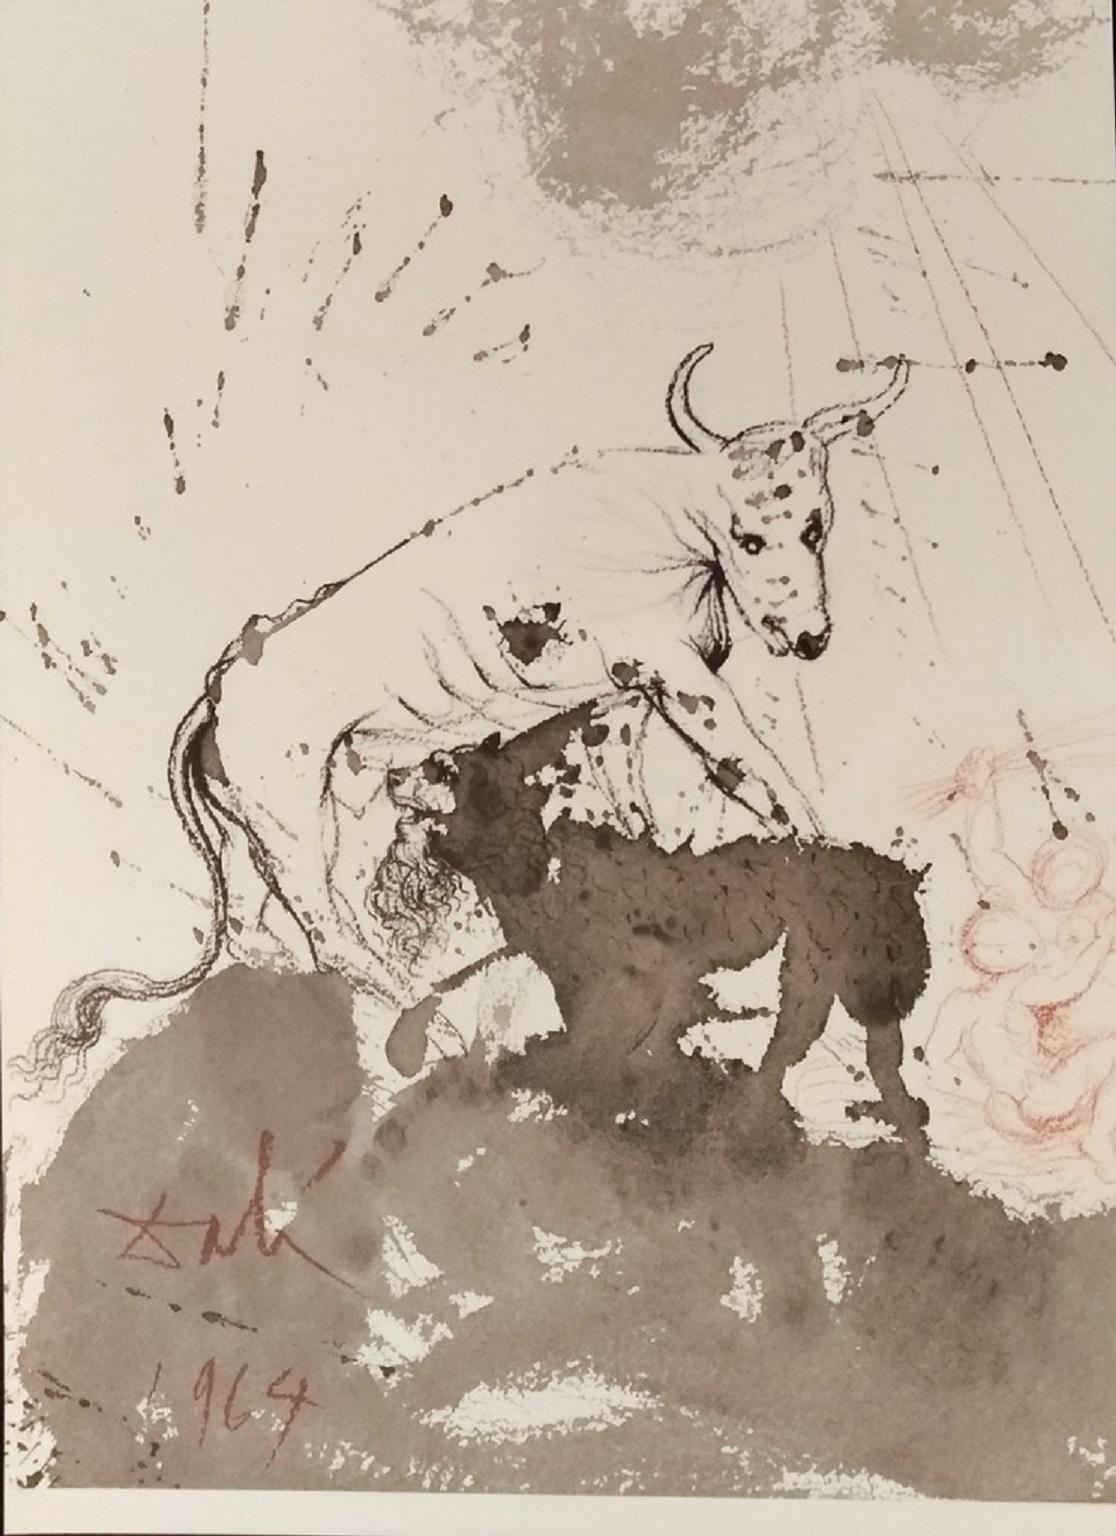 Salvador Dalí Animal Print - Leo quasi Bos Comedens Paleas -Original Lithograph by S. Dalì - 1964